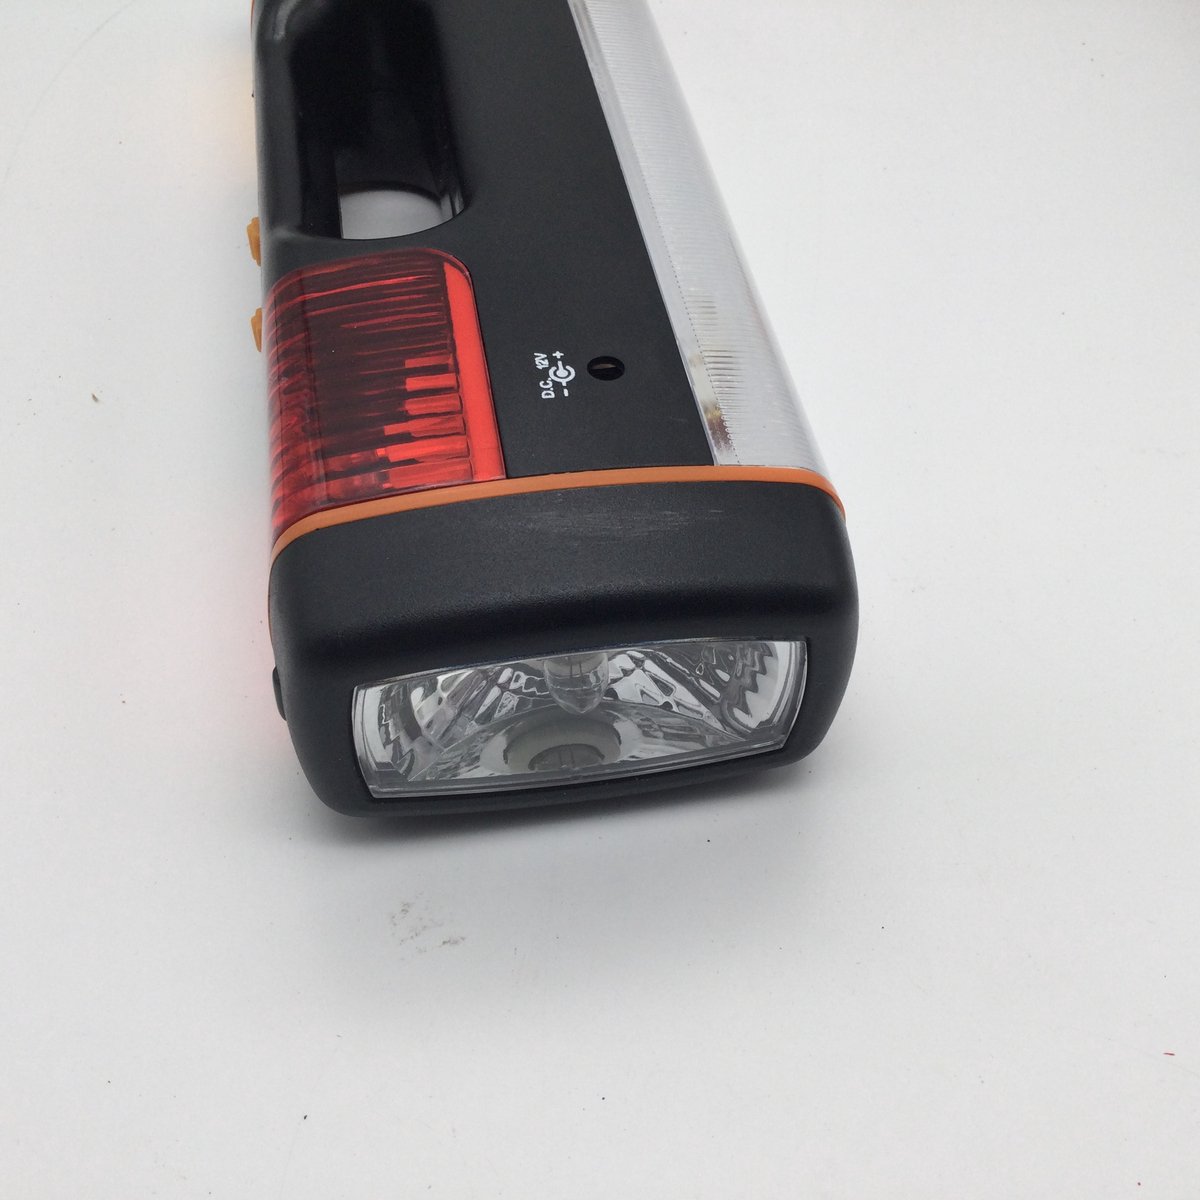 Multifunctionele lamp voor in de auto, handig bij pech onderweg, inclusief batterijen en oplaadsnoer voor in de sigaretten aansteker